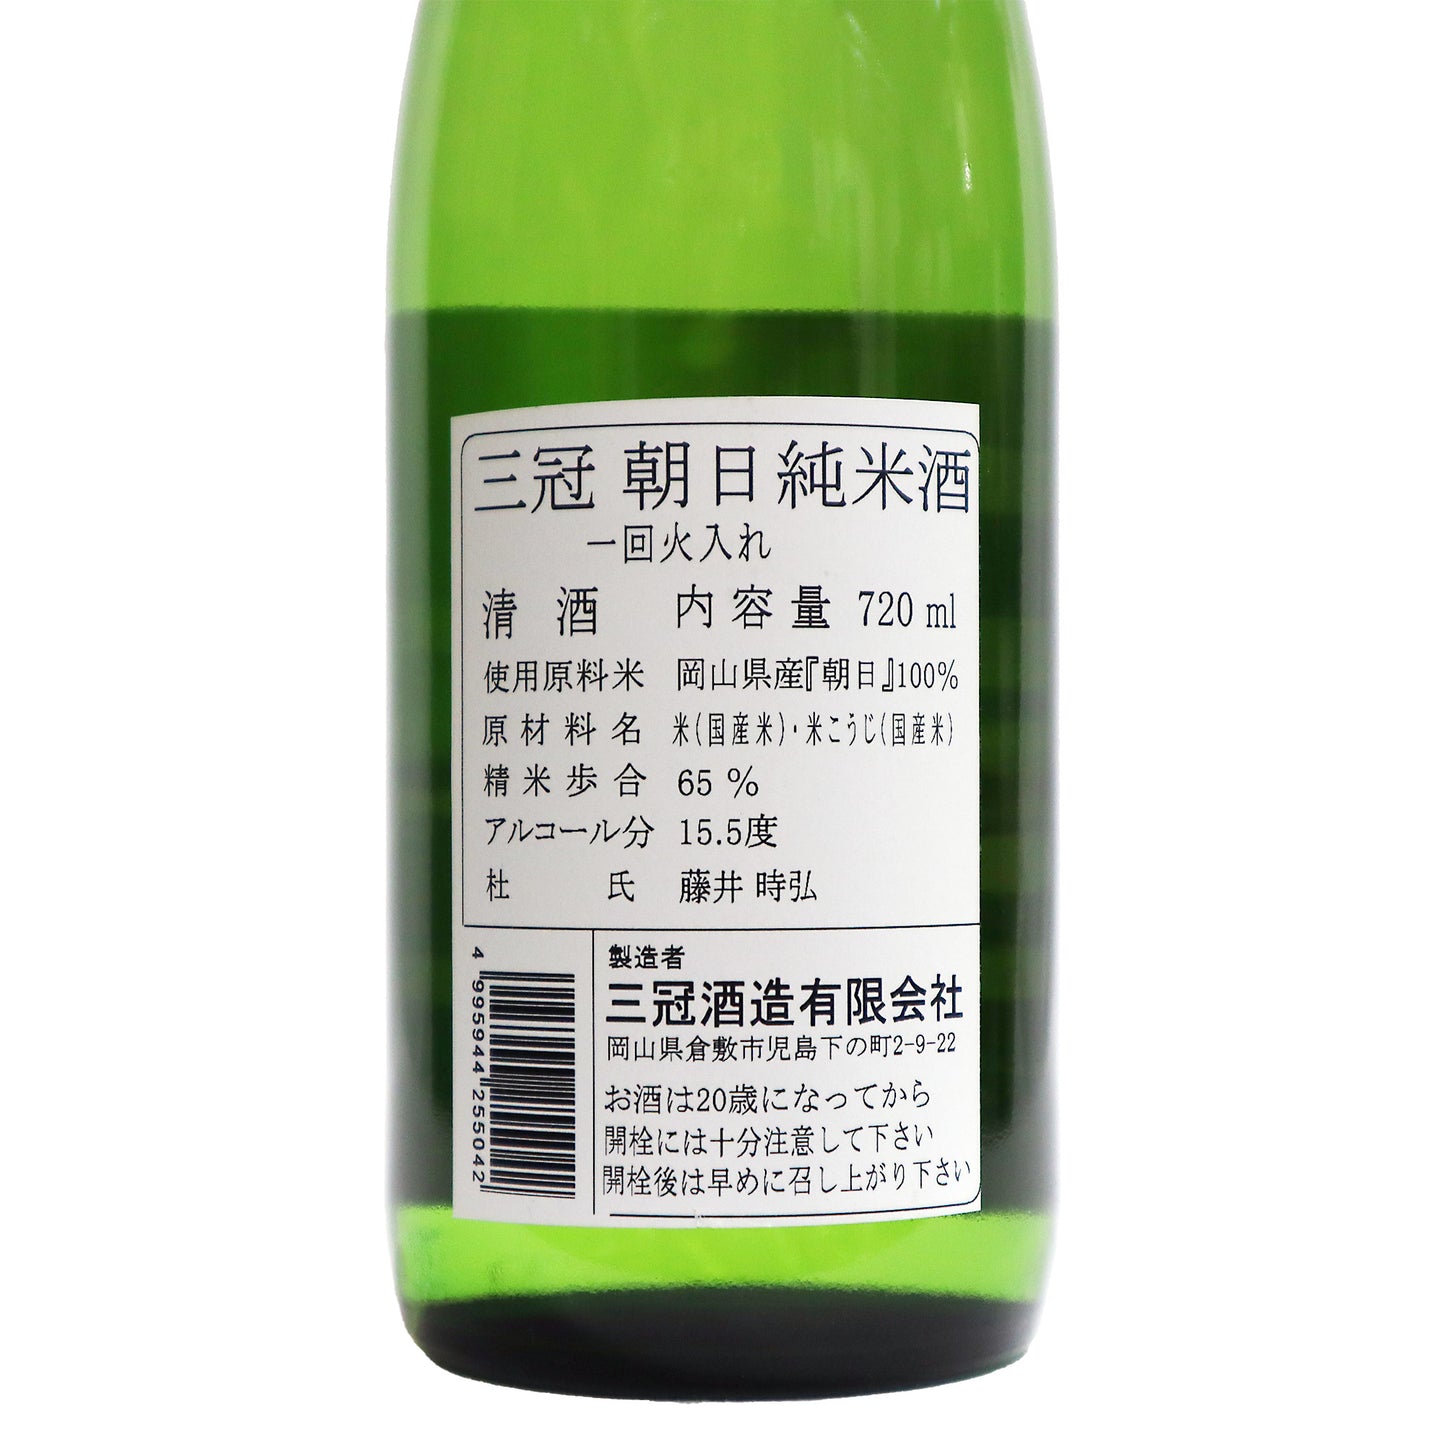 【三冠】朝日 純米酒 720ml/三冠酒造